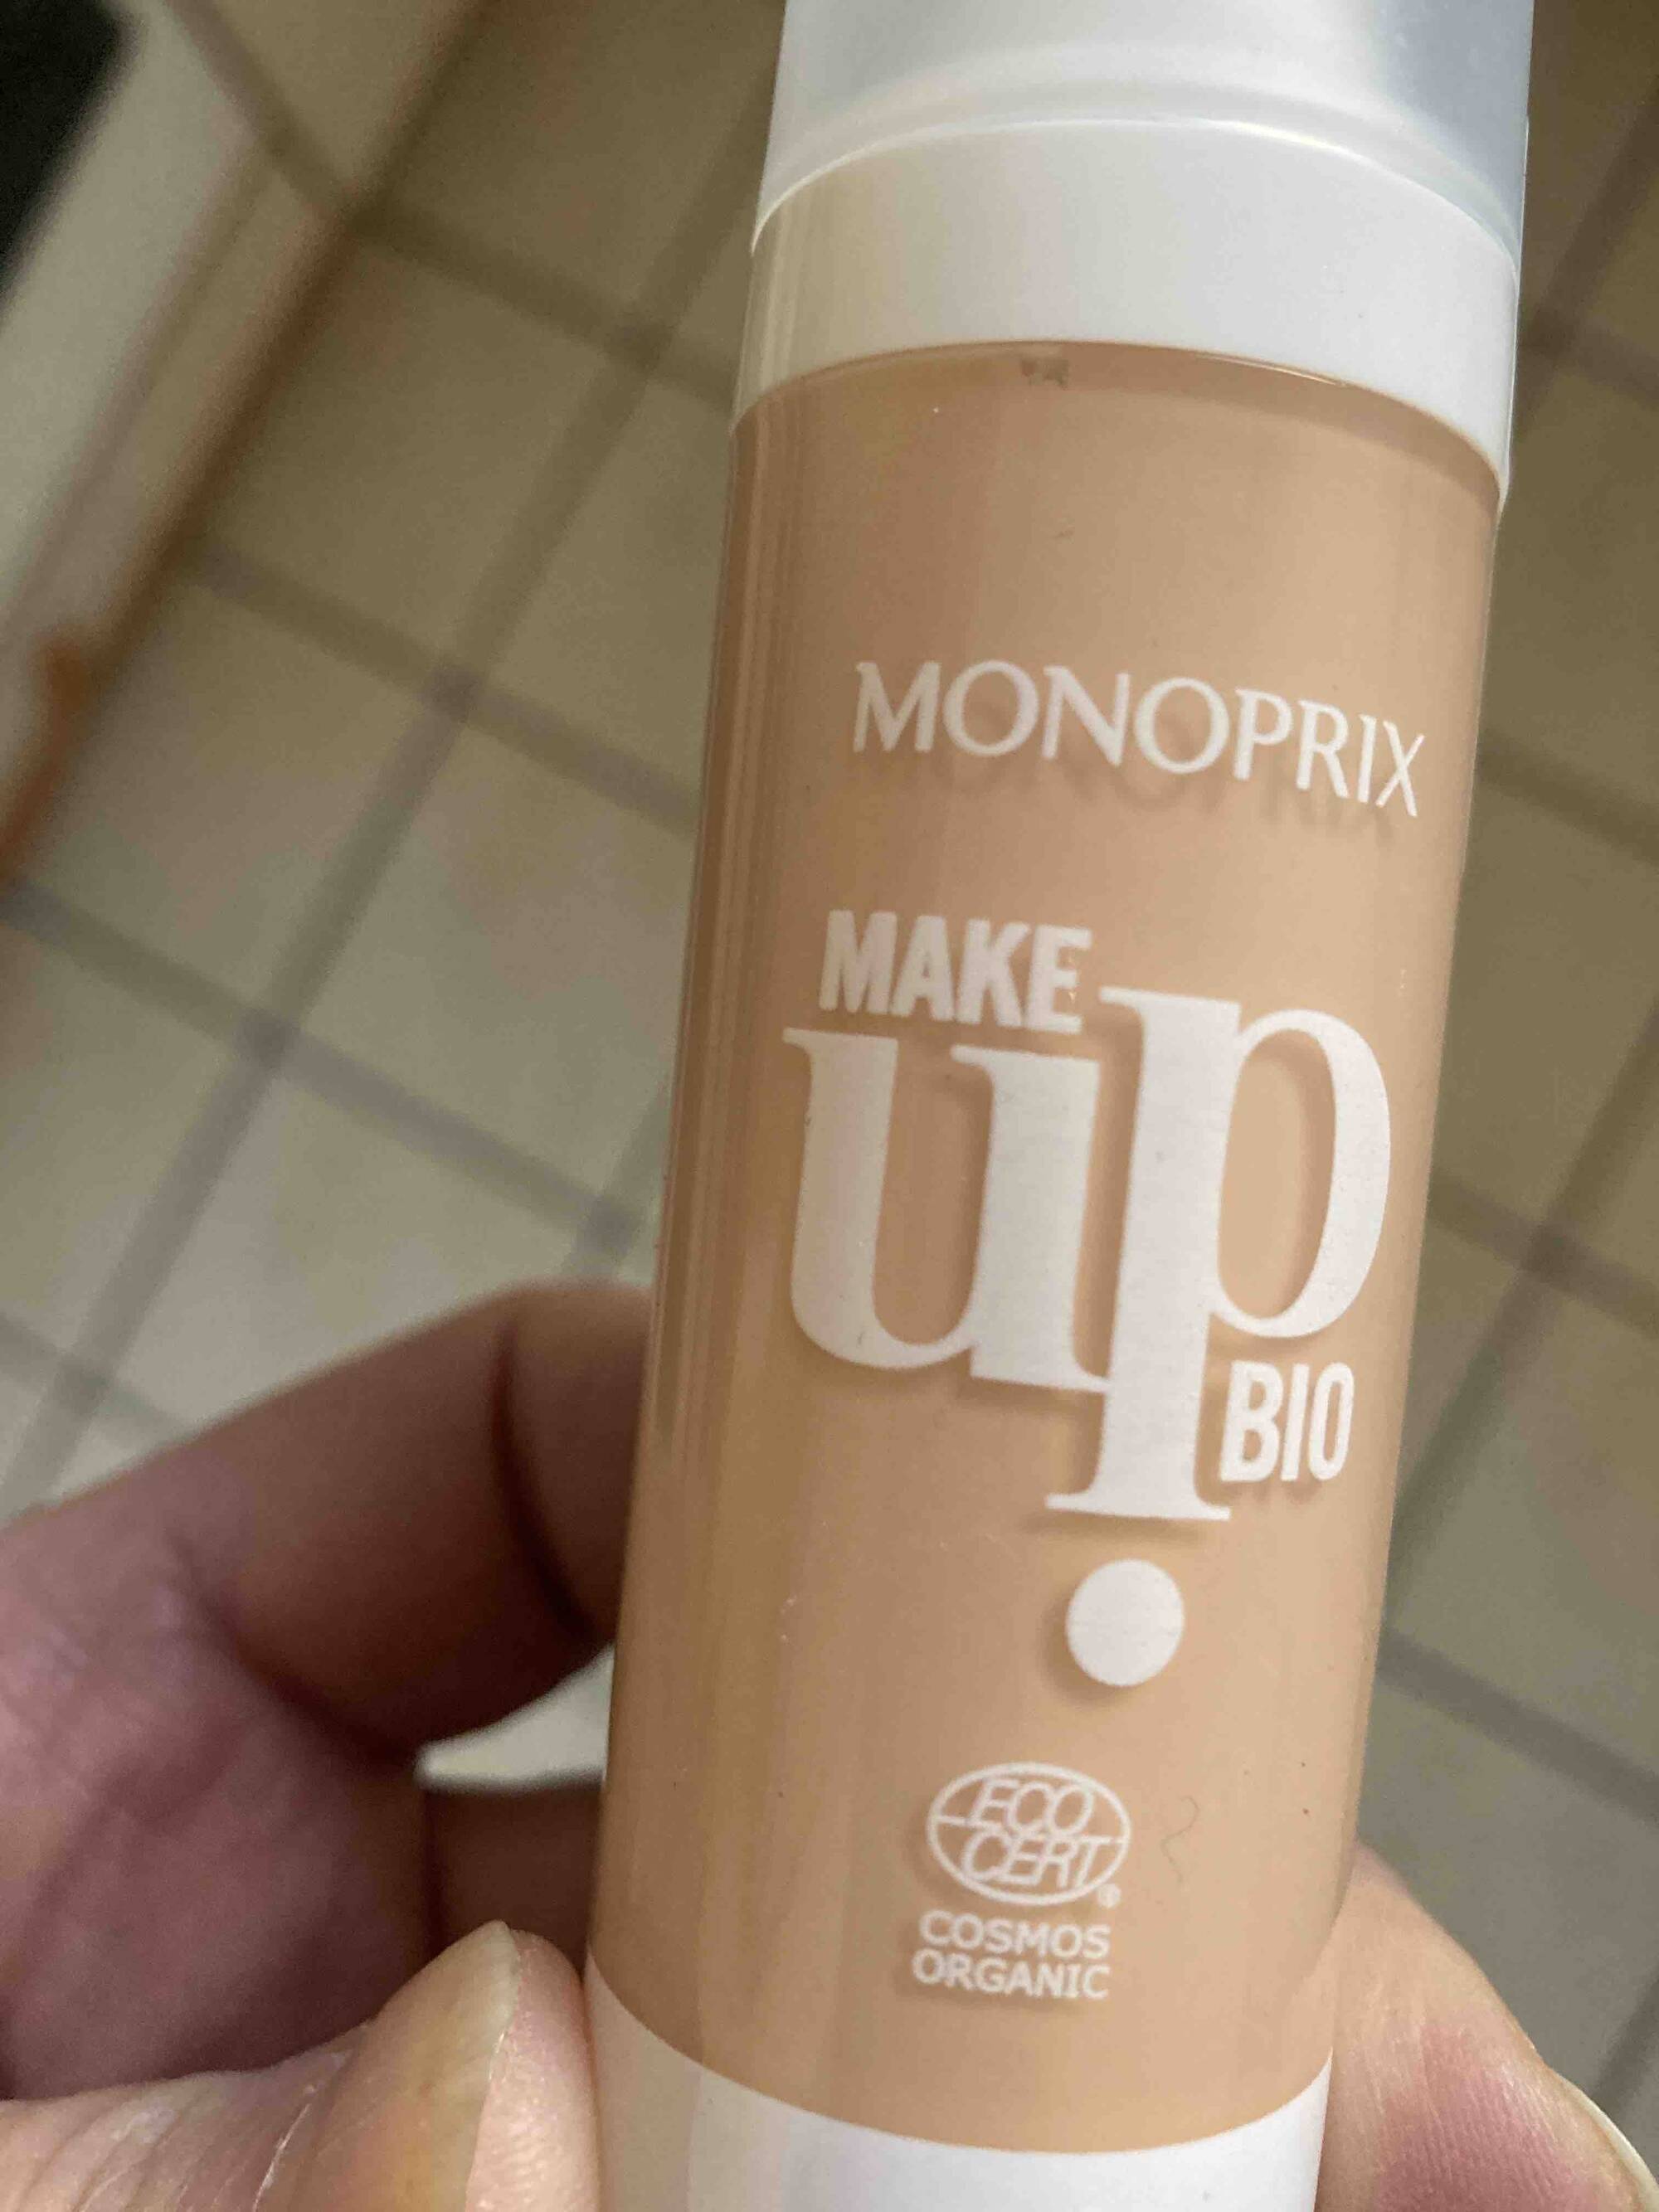 MONOPRIX - Make up Bio